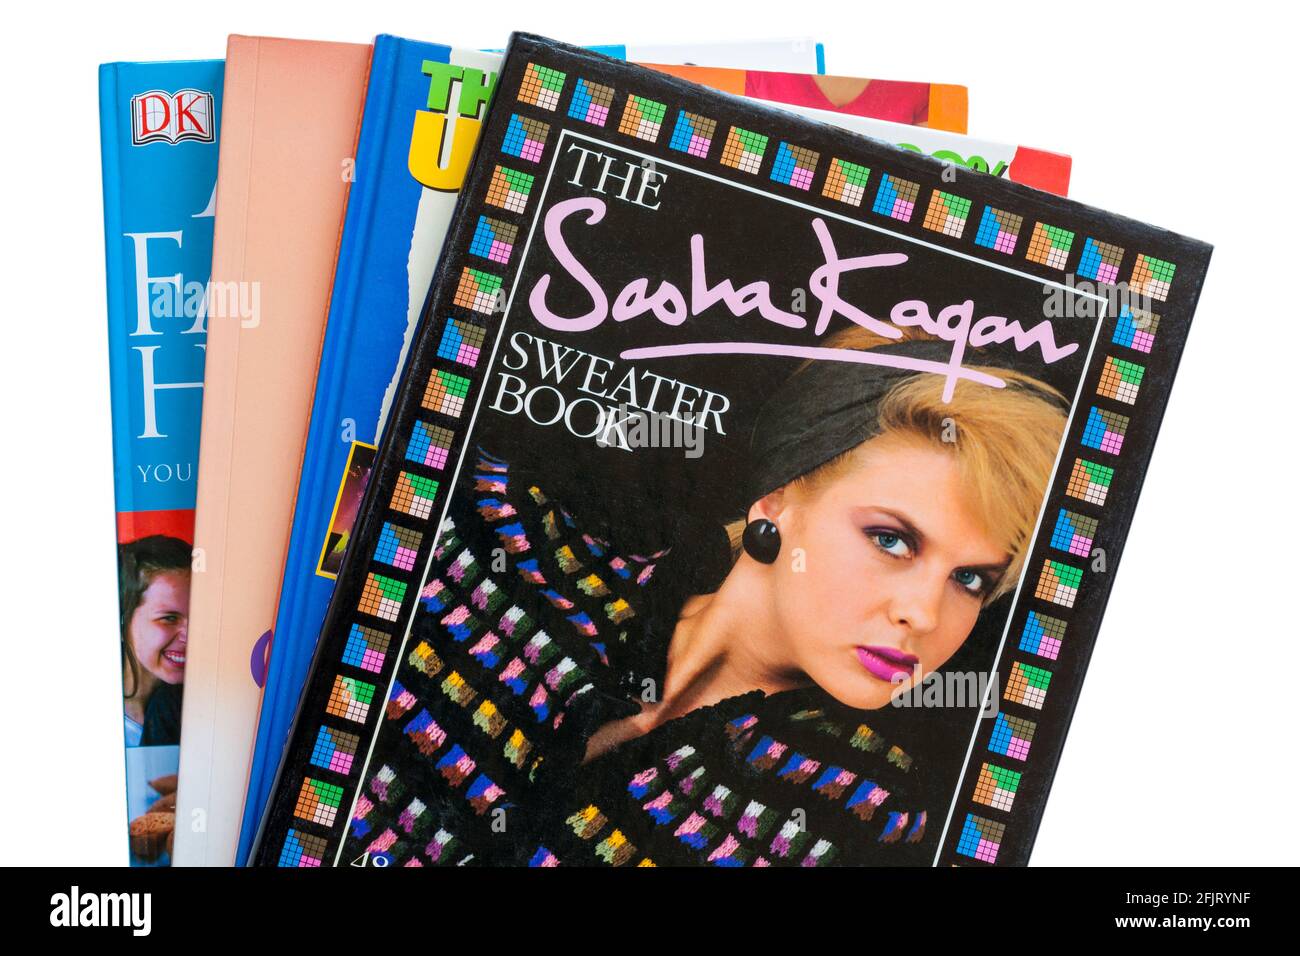 Mucchio di libri con il Sasha Kagan Sweater Book on in alto su sfondo bianco Foto Stock